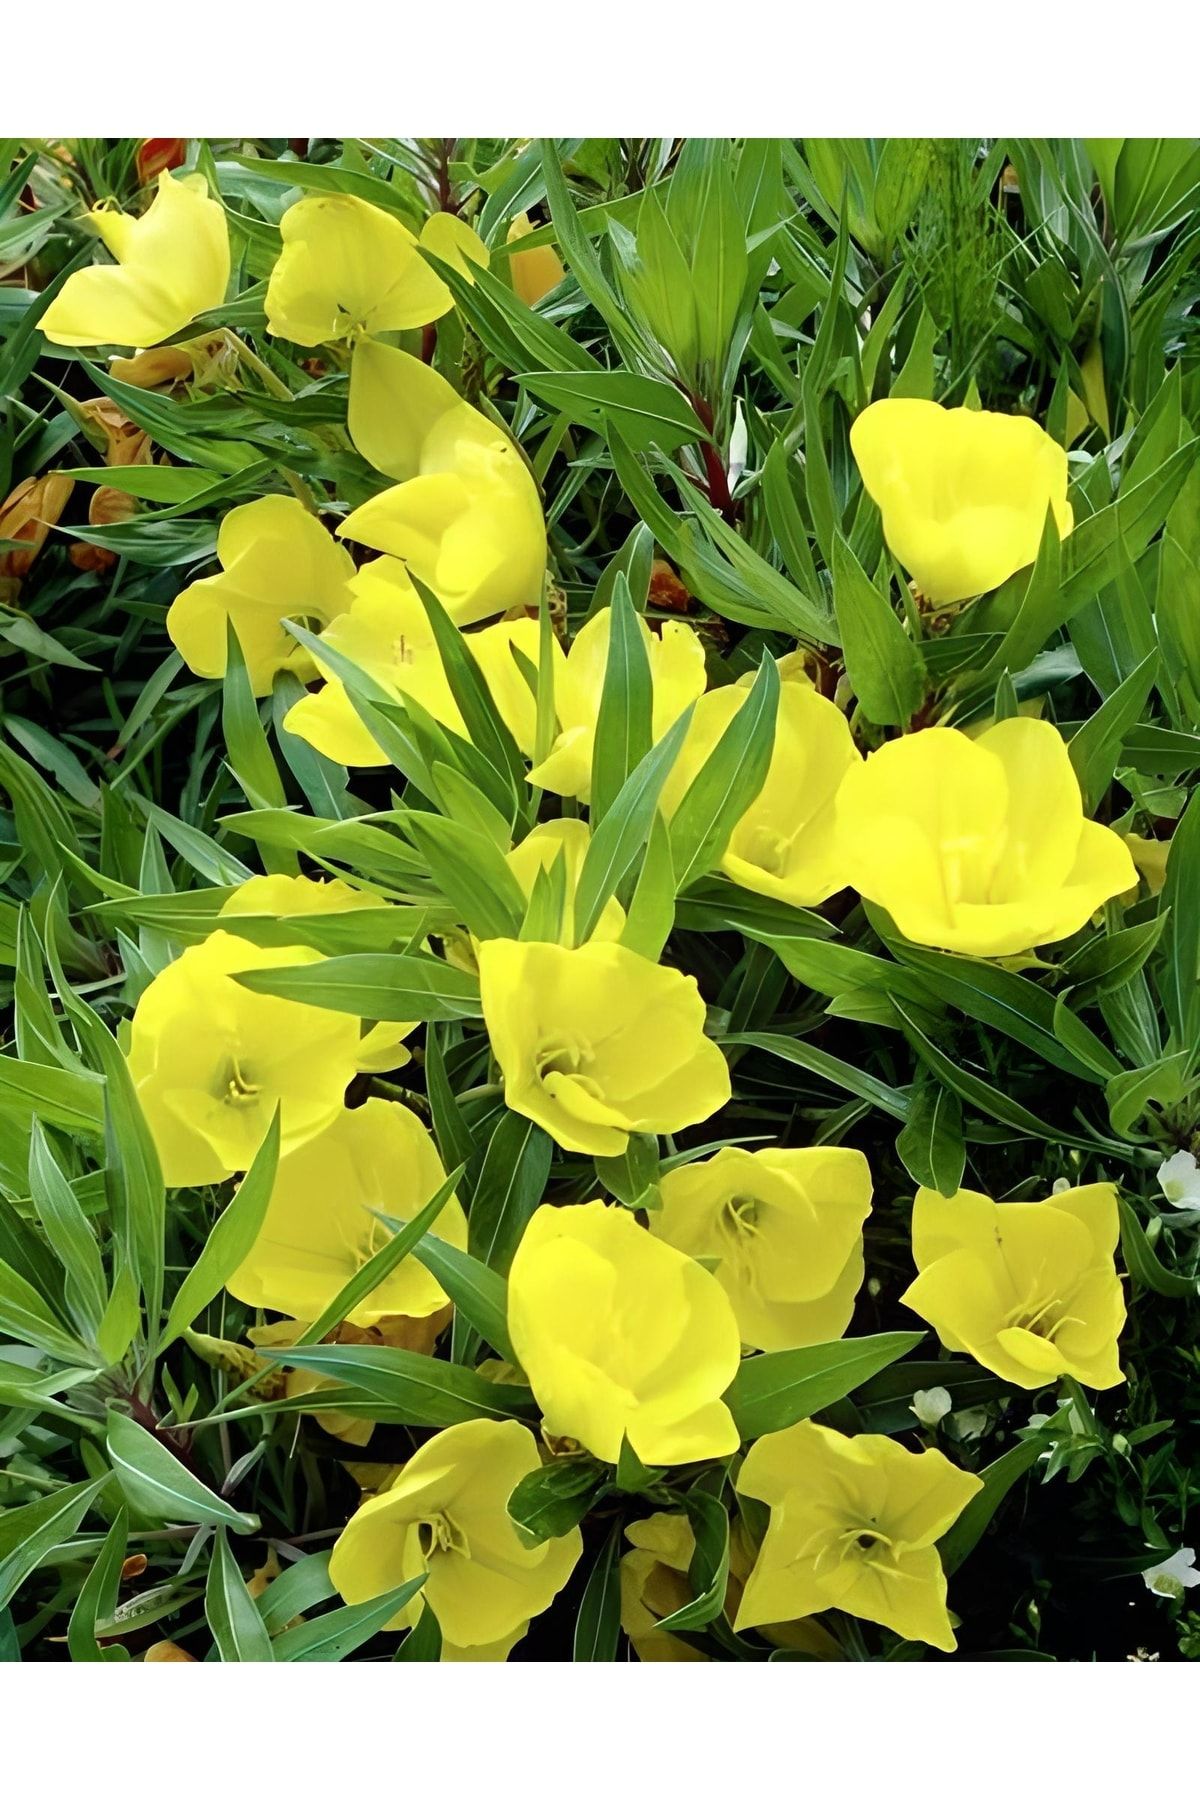 GARDENYA TOHUMCULUK Gün Sarısı Renk Ezan Çiçeği Tohumu 20tohum